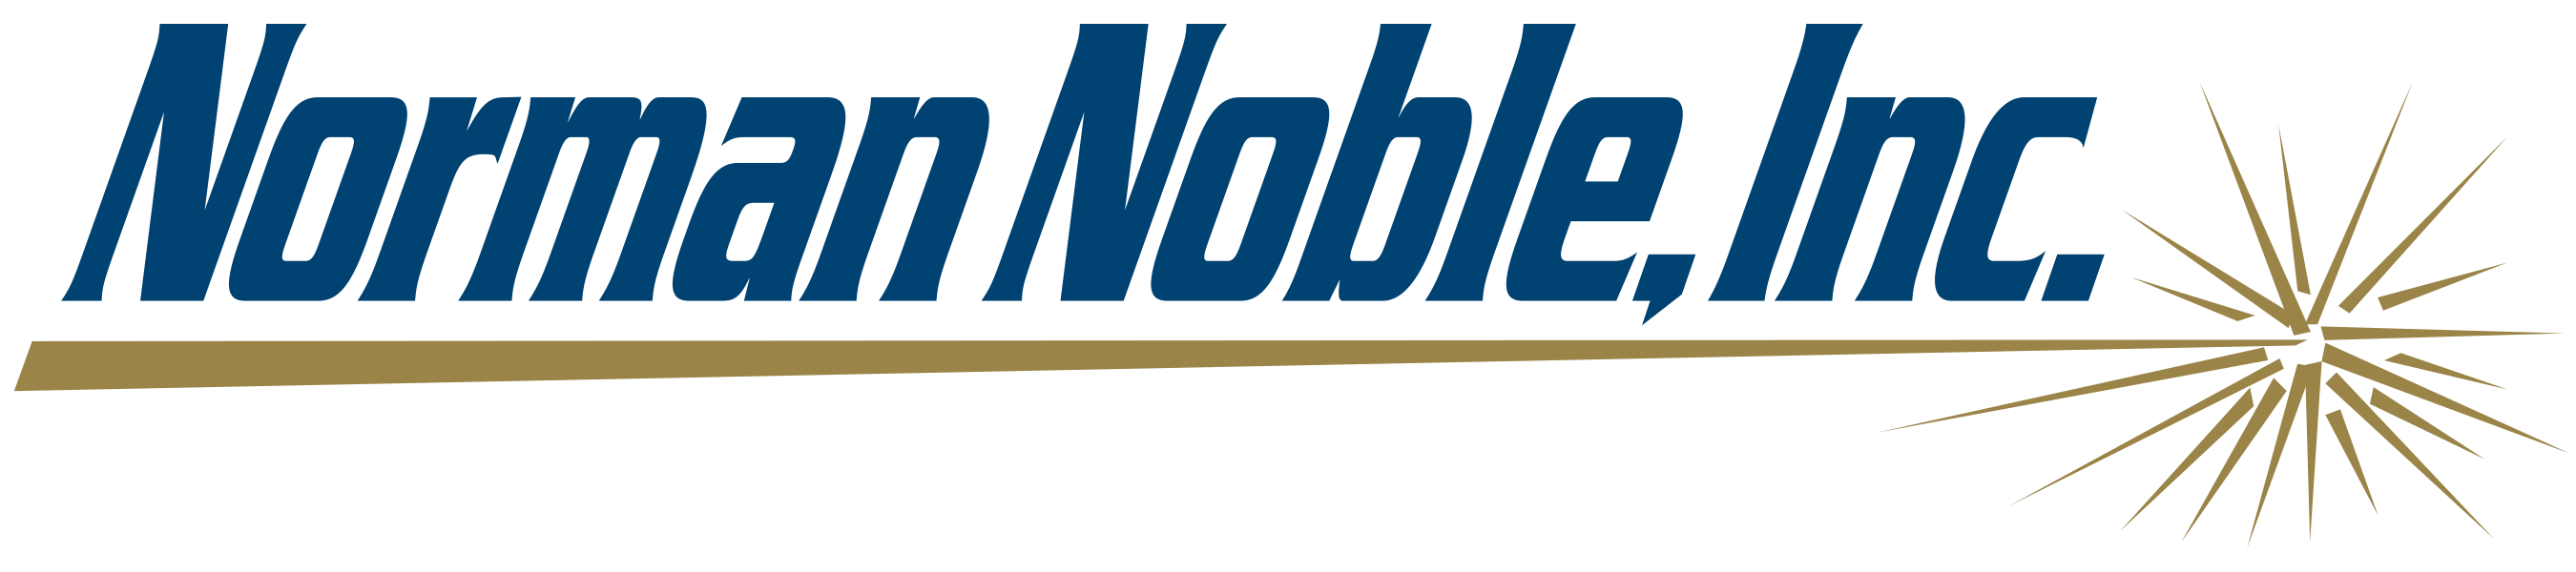 Norman Noble logo